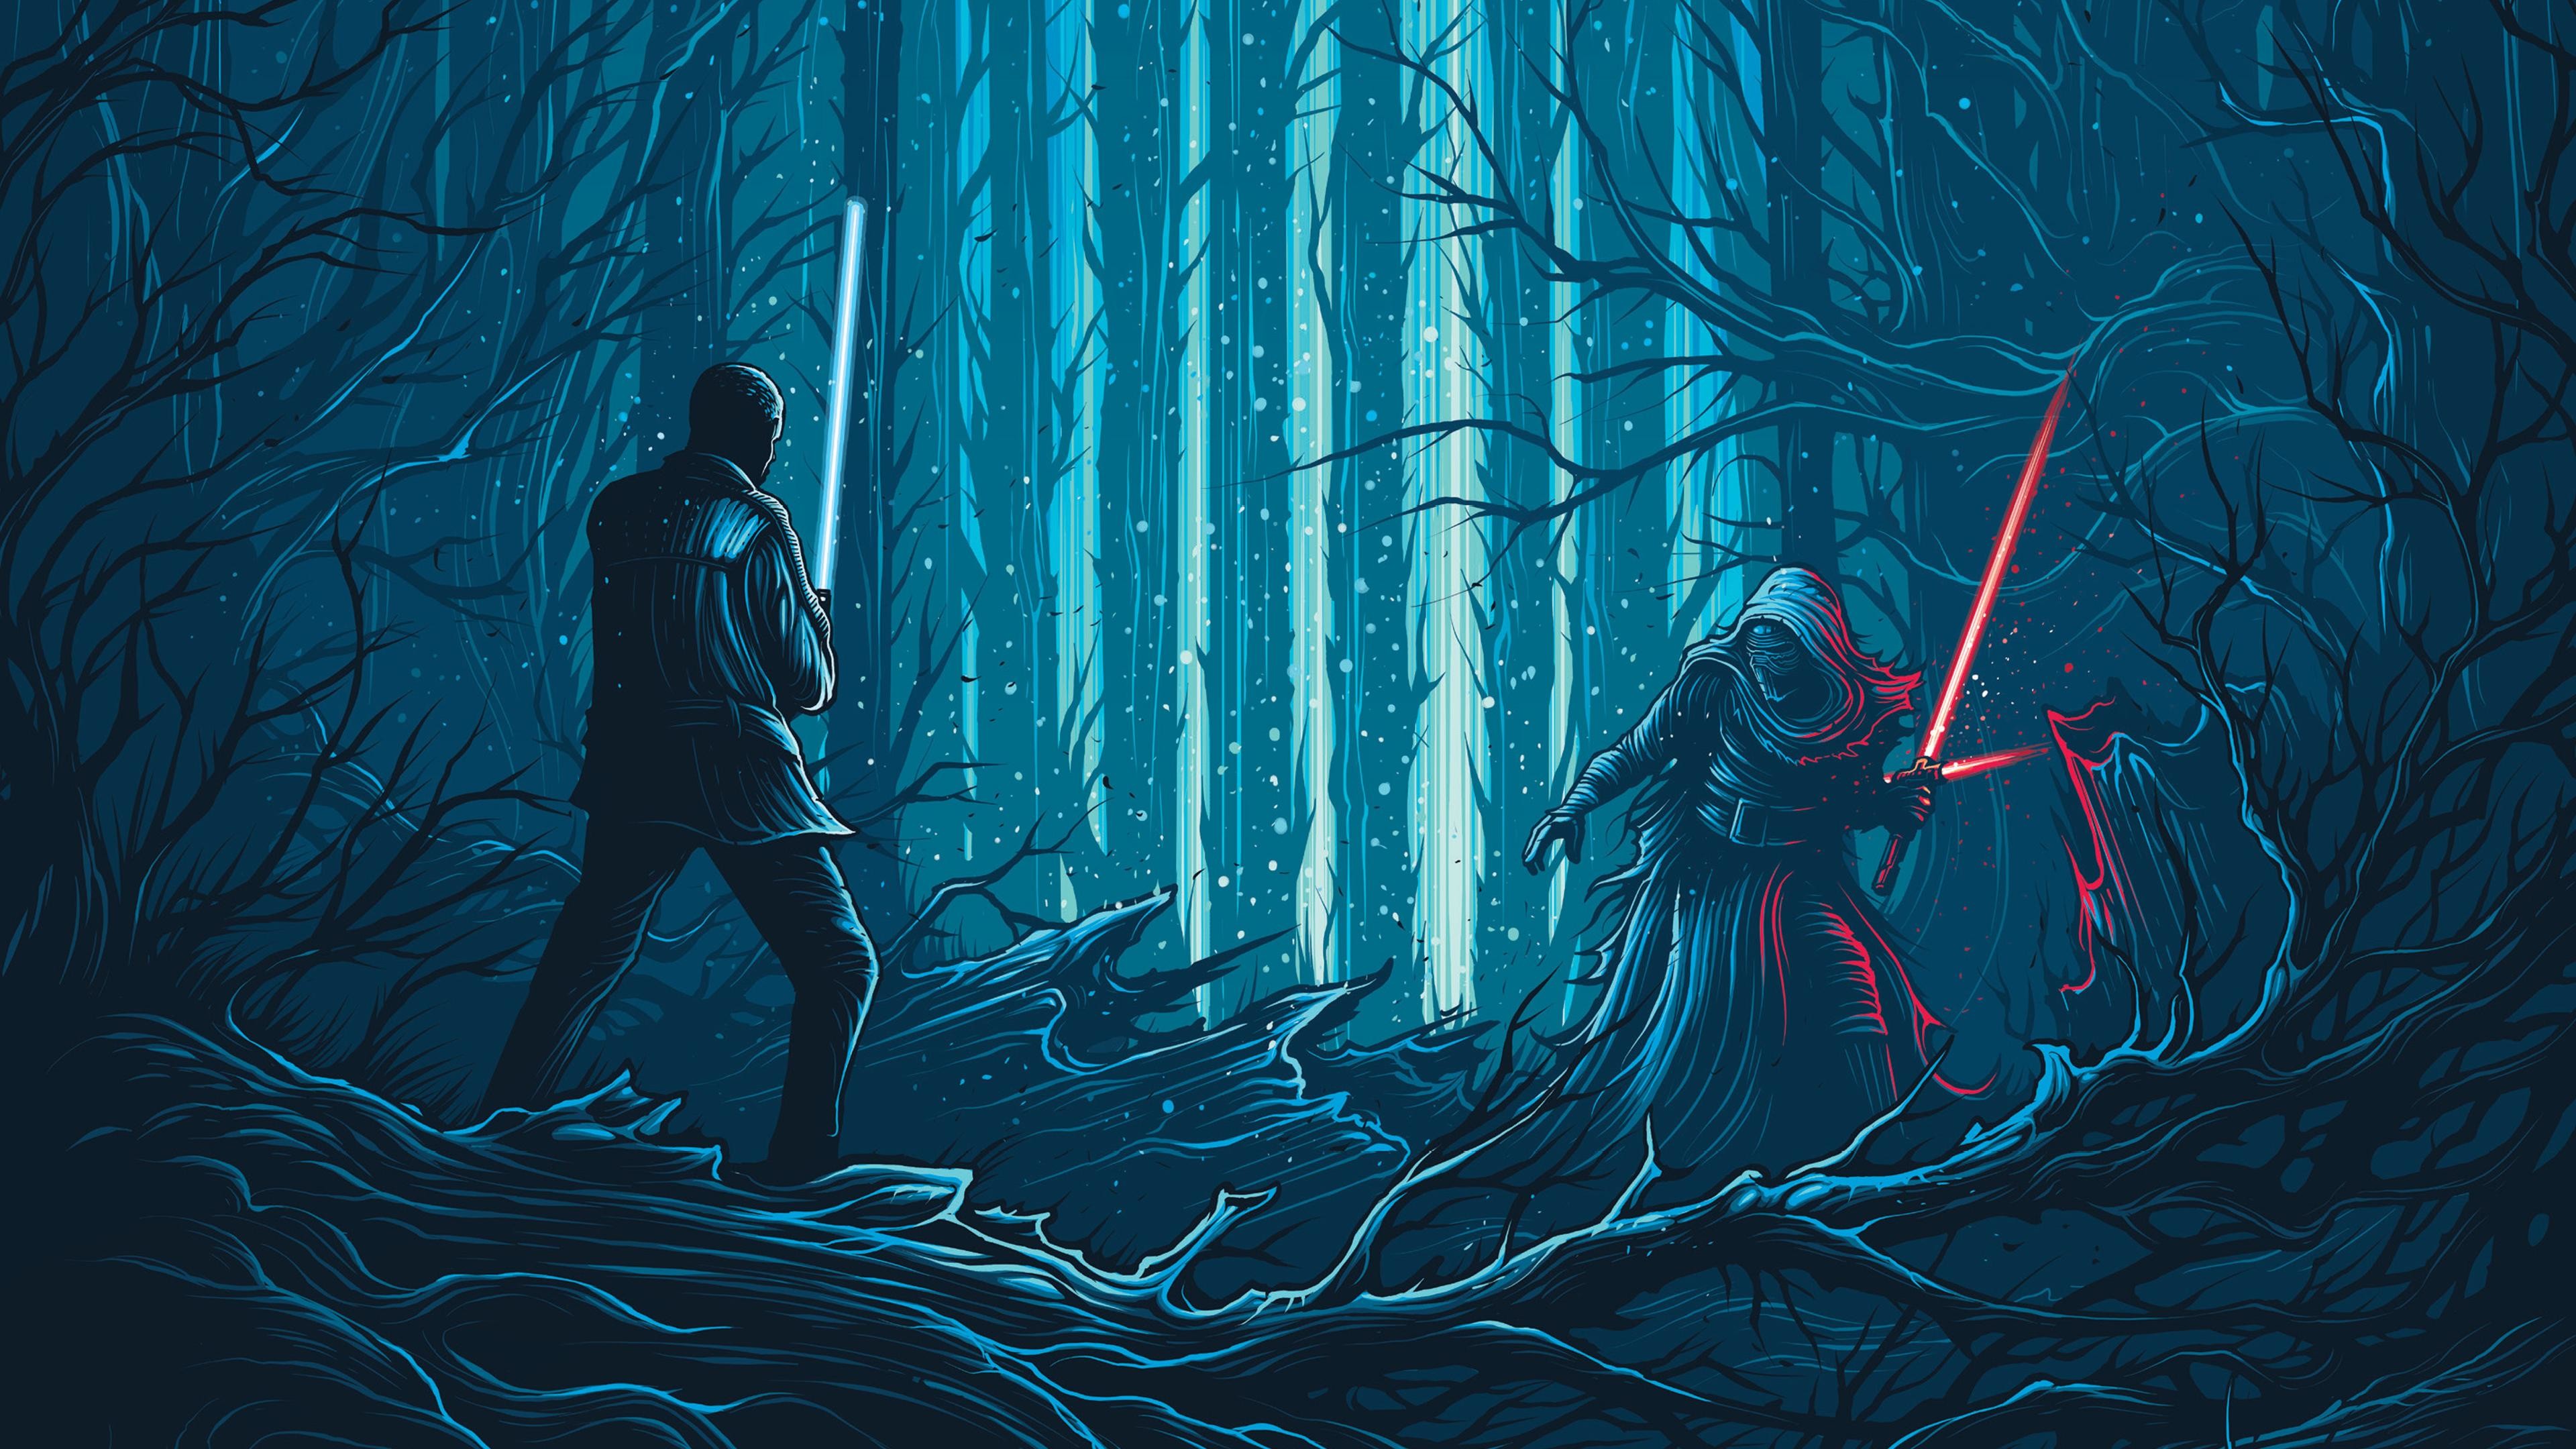 Star Wars The Force Awakens Artwork 4K Wallpaper